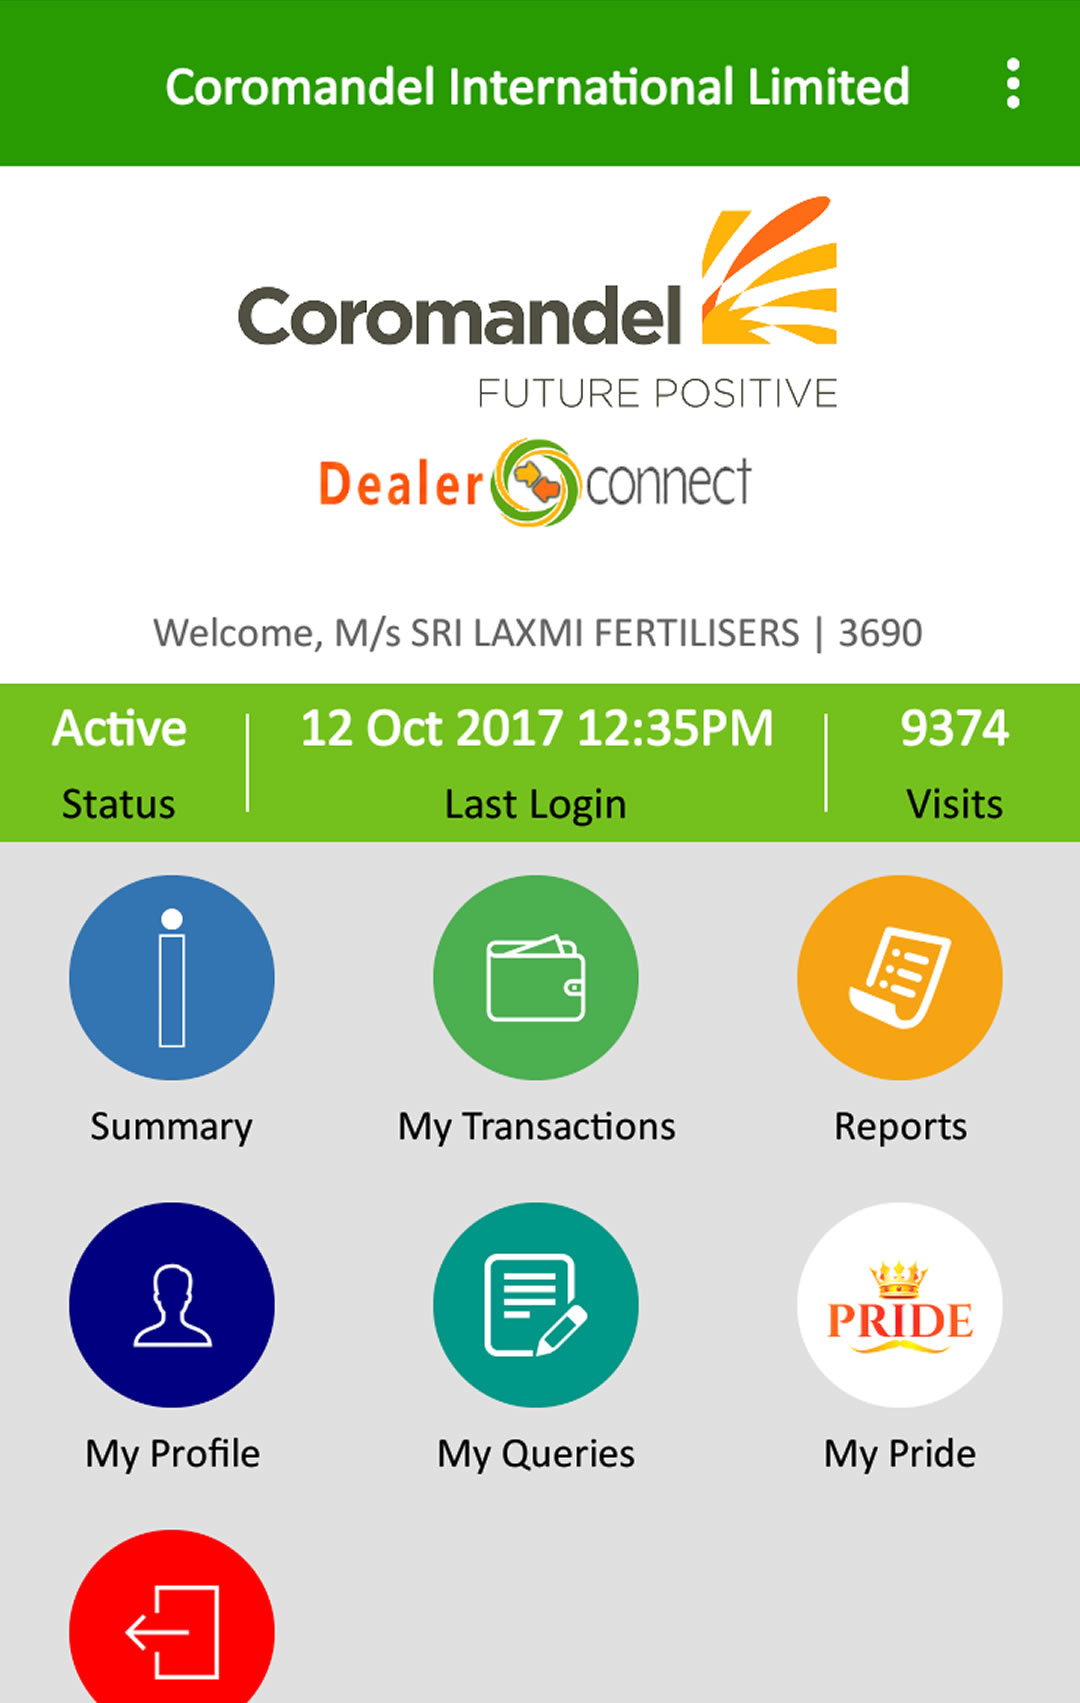 Coromandel Dealer Connect